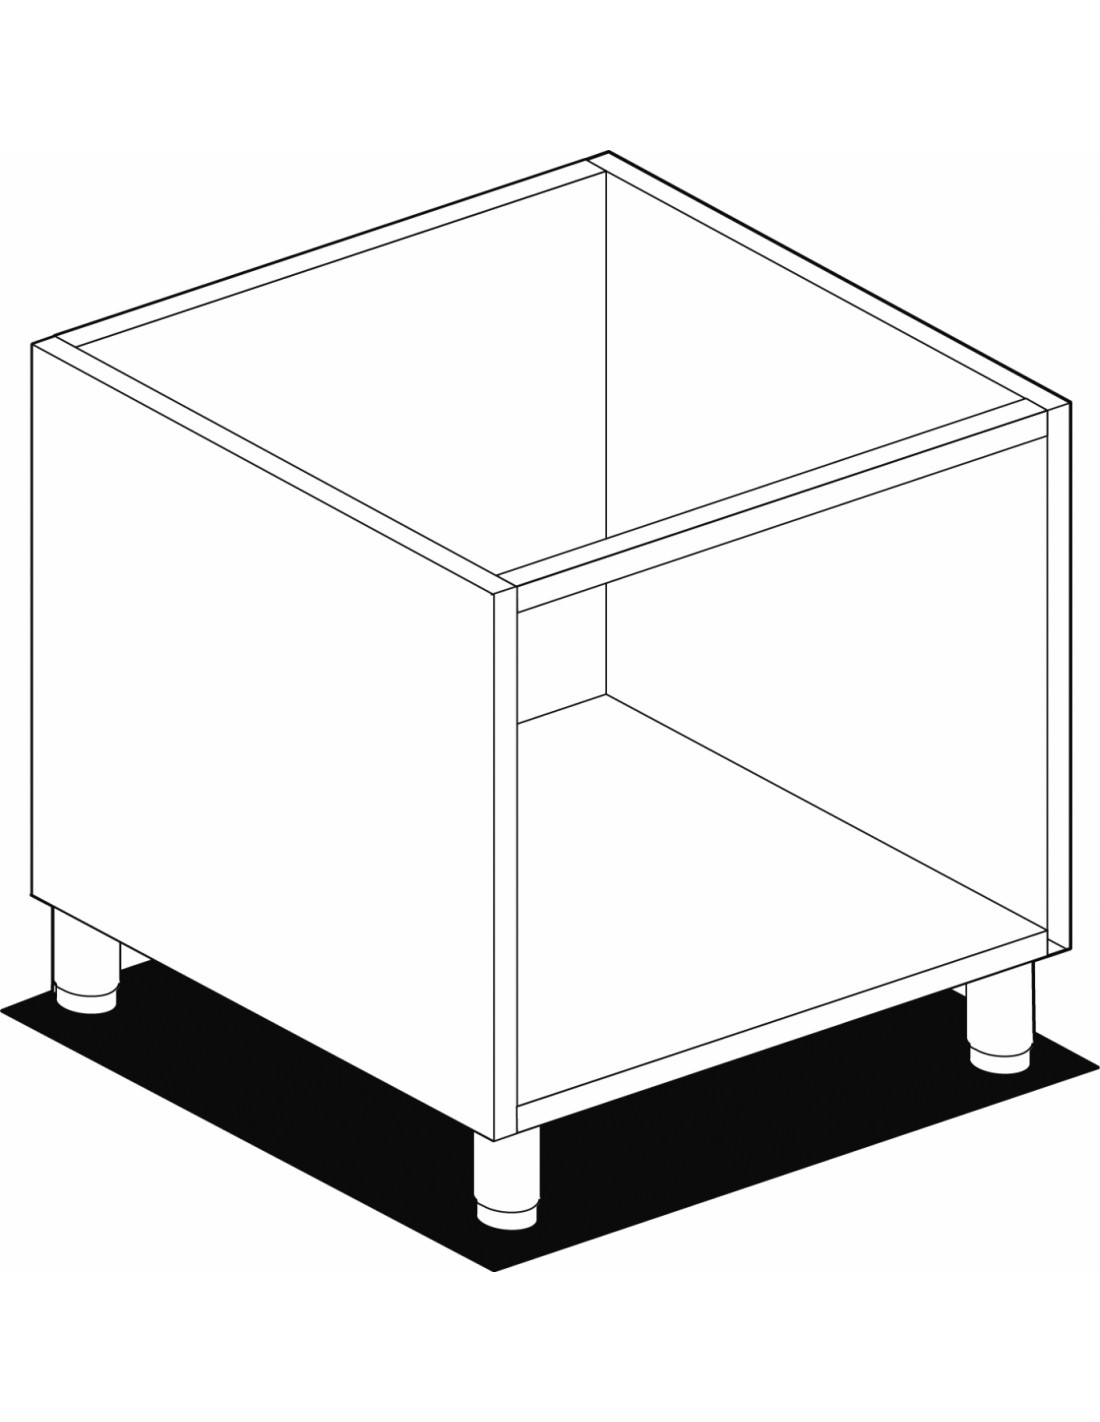 Open base unit - Dimensions cm 80 x 53.5 x 58 h